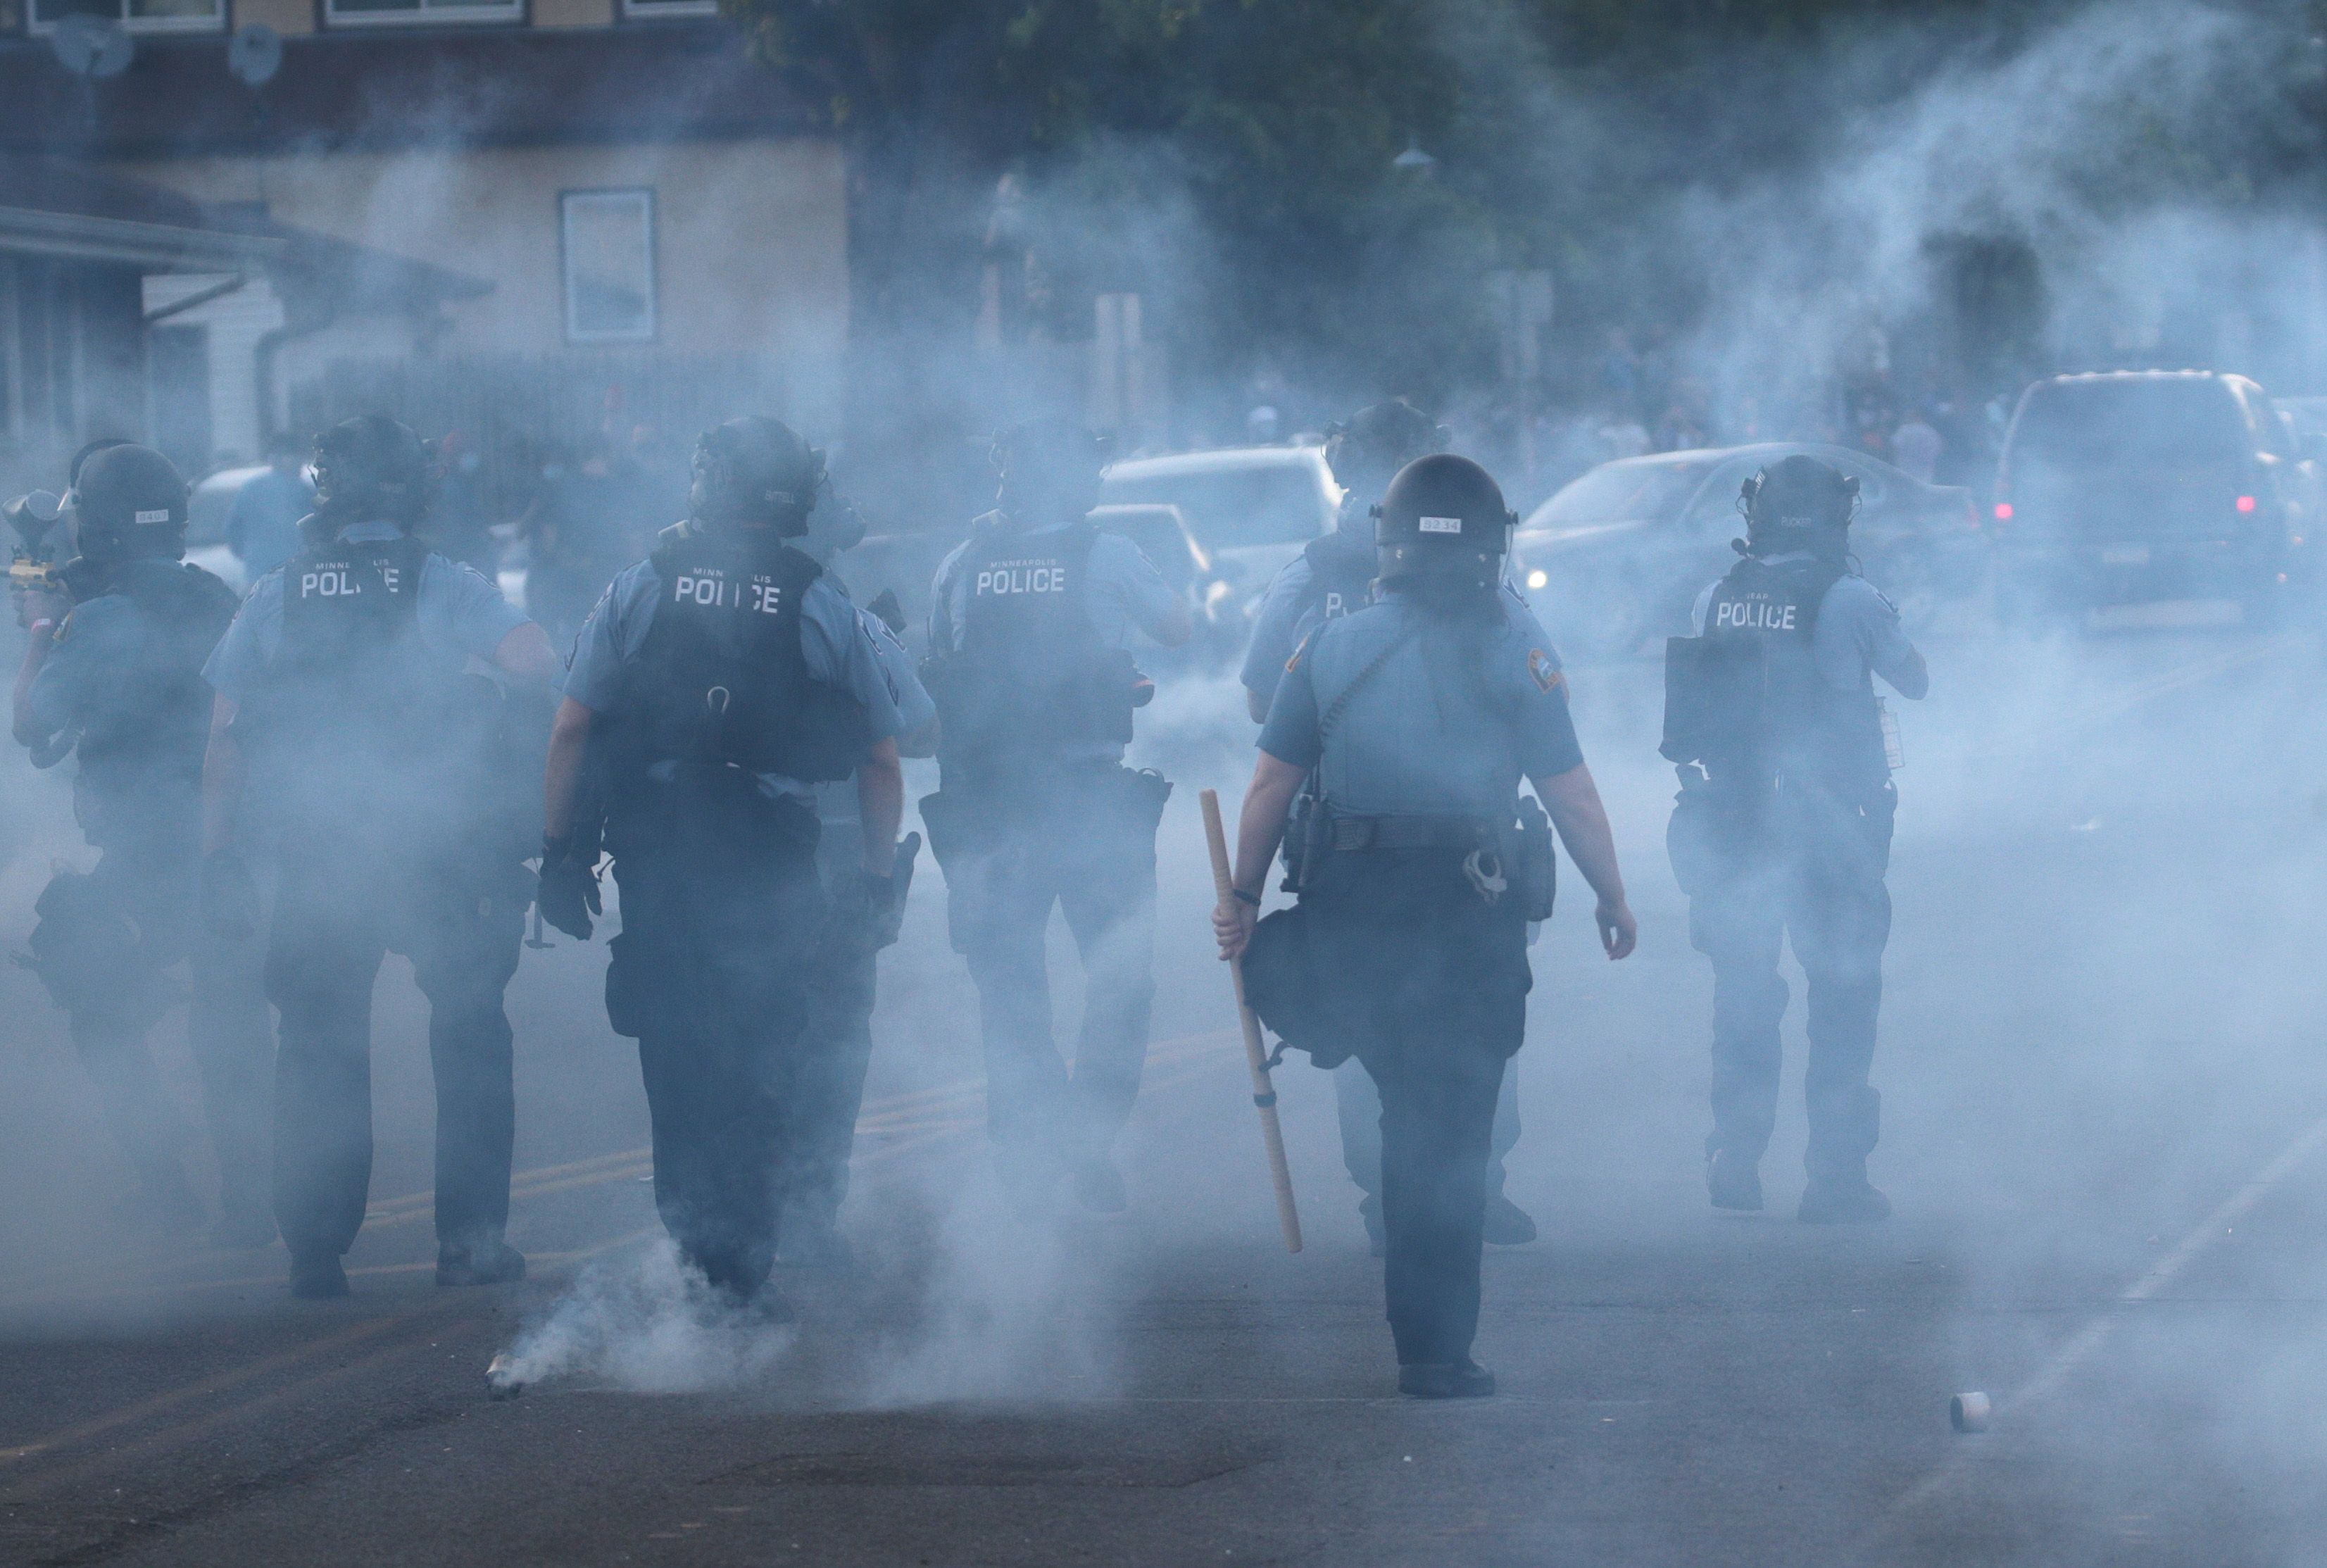 Police walking through tear gas